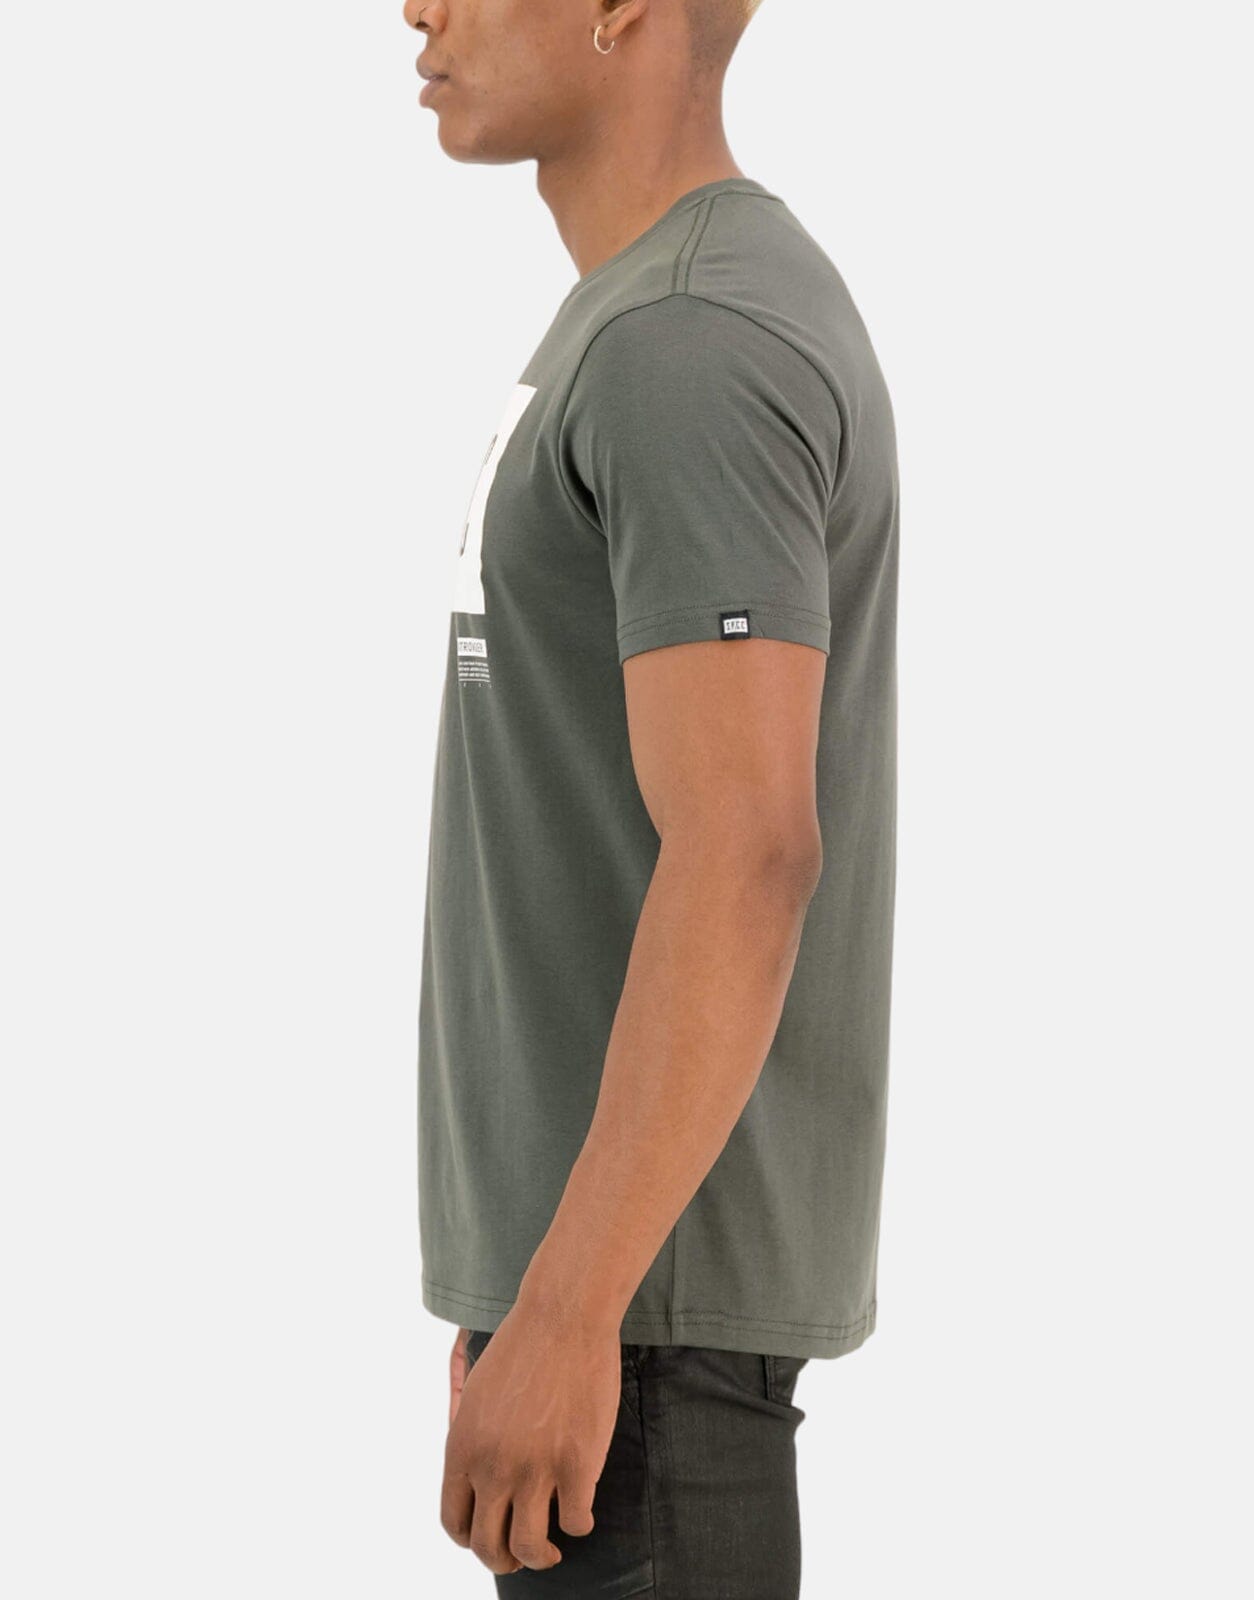 SPCC Orwell Fatigue T-Shirt - Subwear